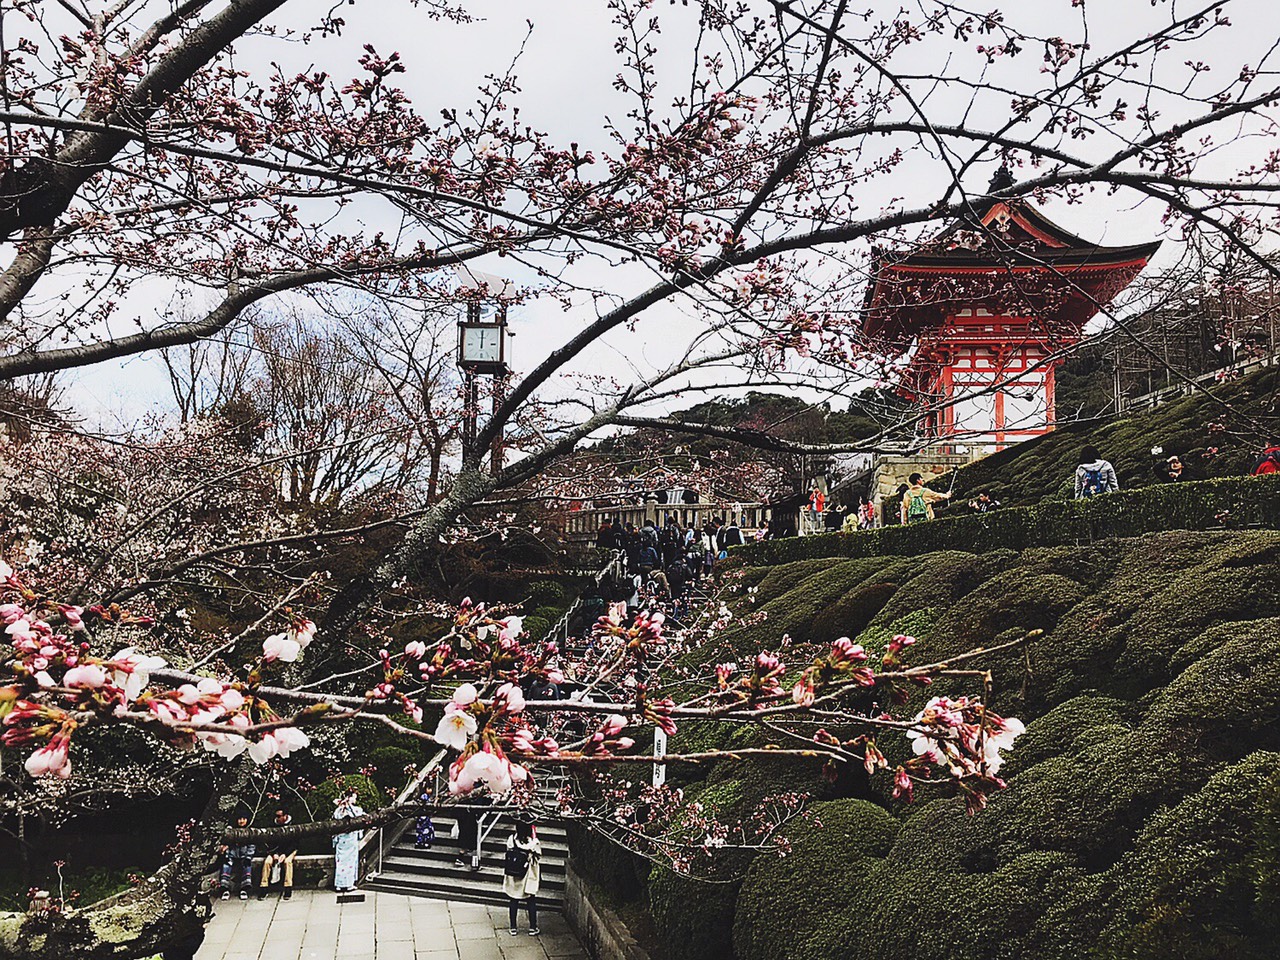 Đoàn du lịch Nhật Bản mùa hoa anh đào (29/03 - 03/04/2019): Osaka - Kyoto - Nagoya - Fuji - Tokyo, khởi hành HN 